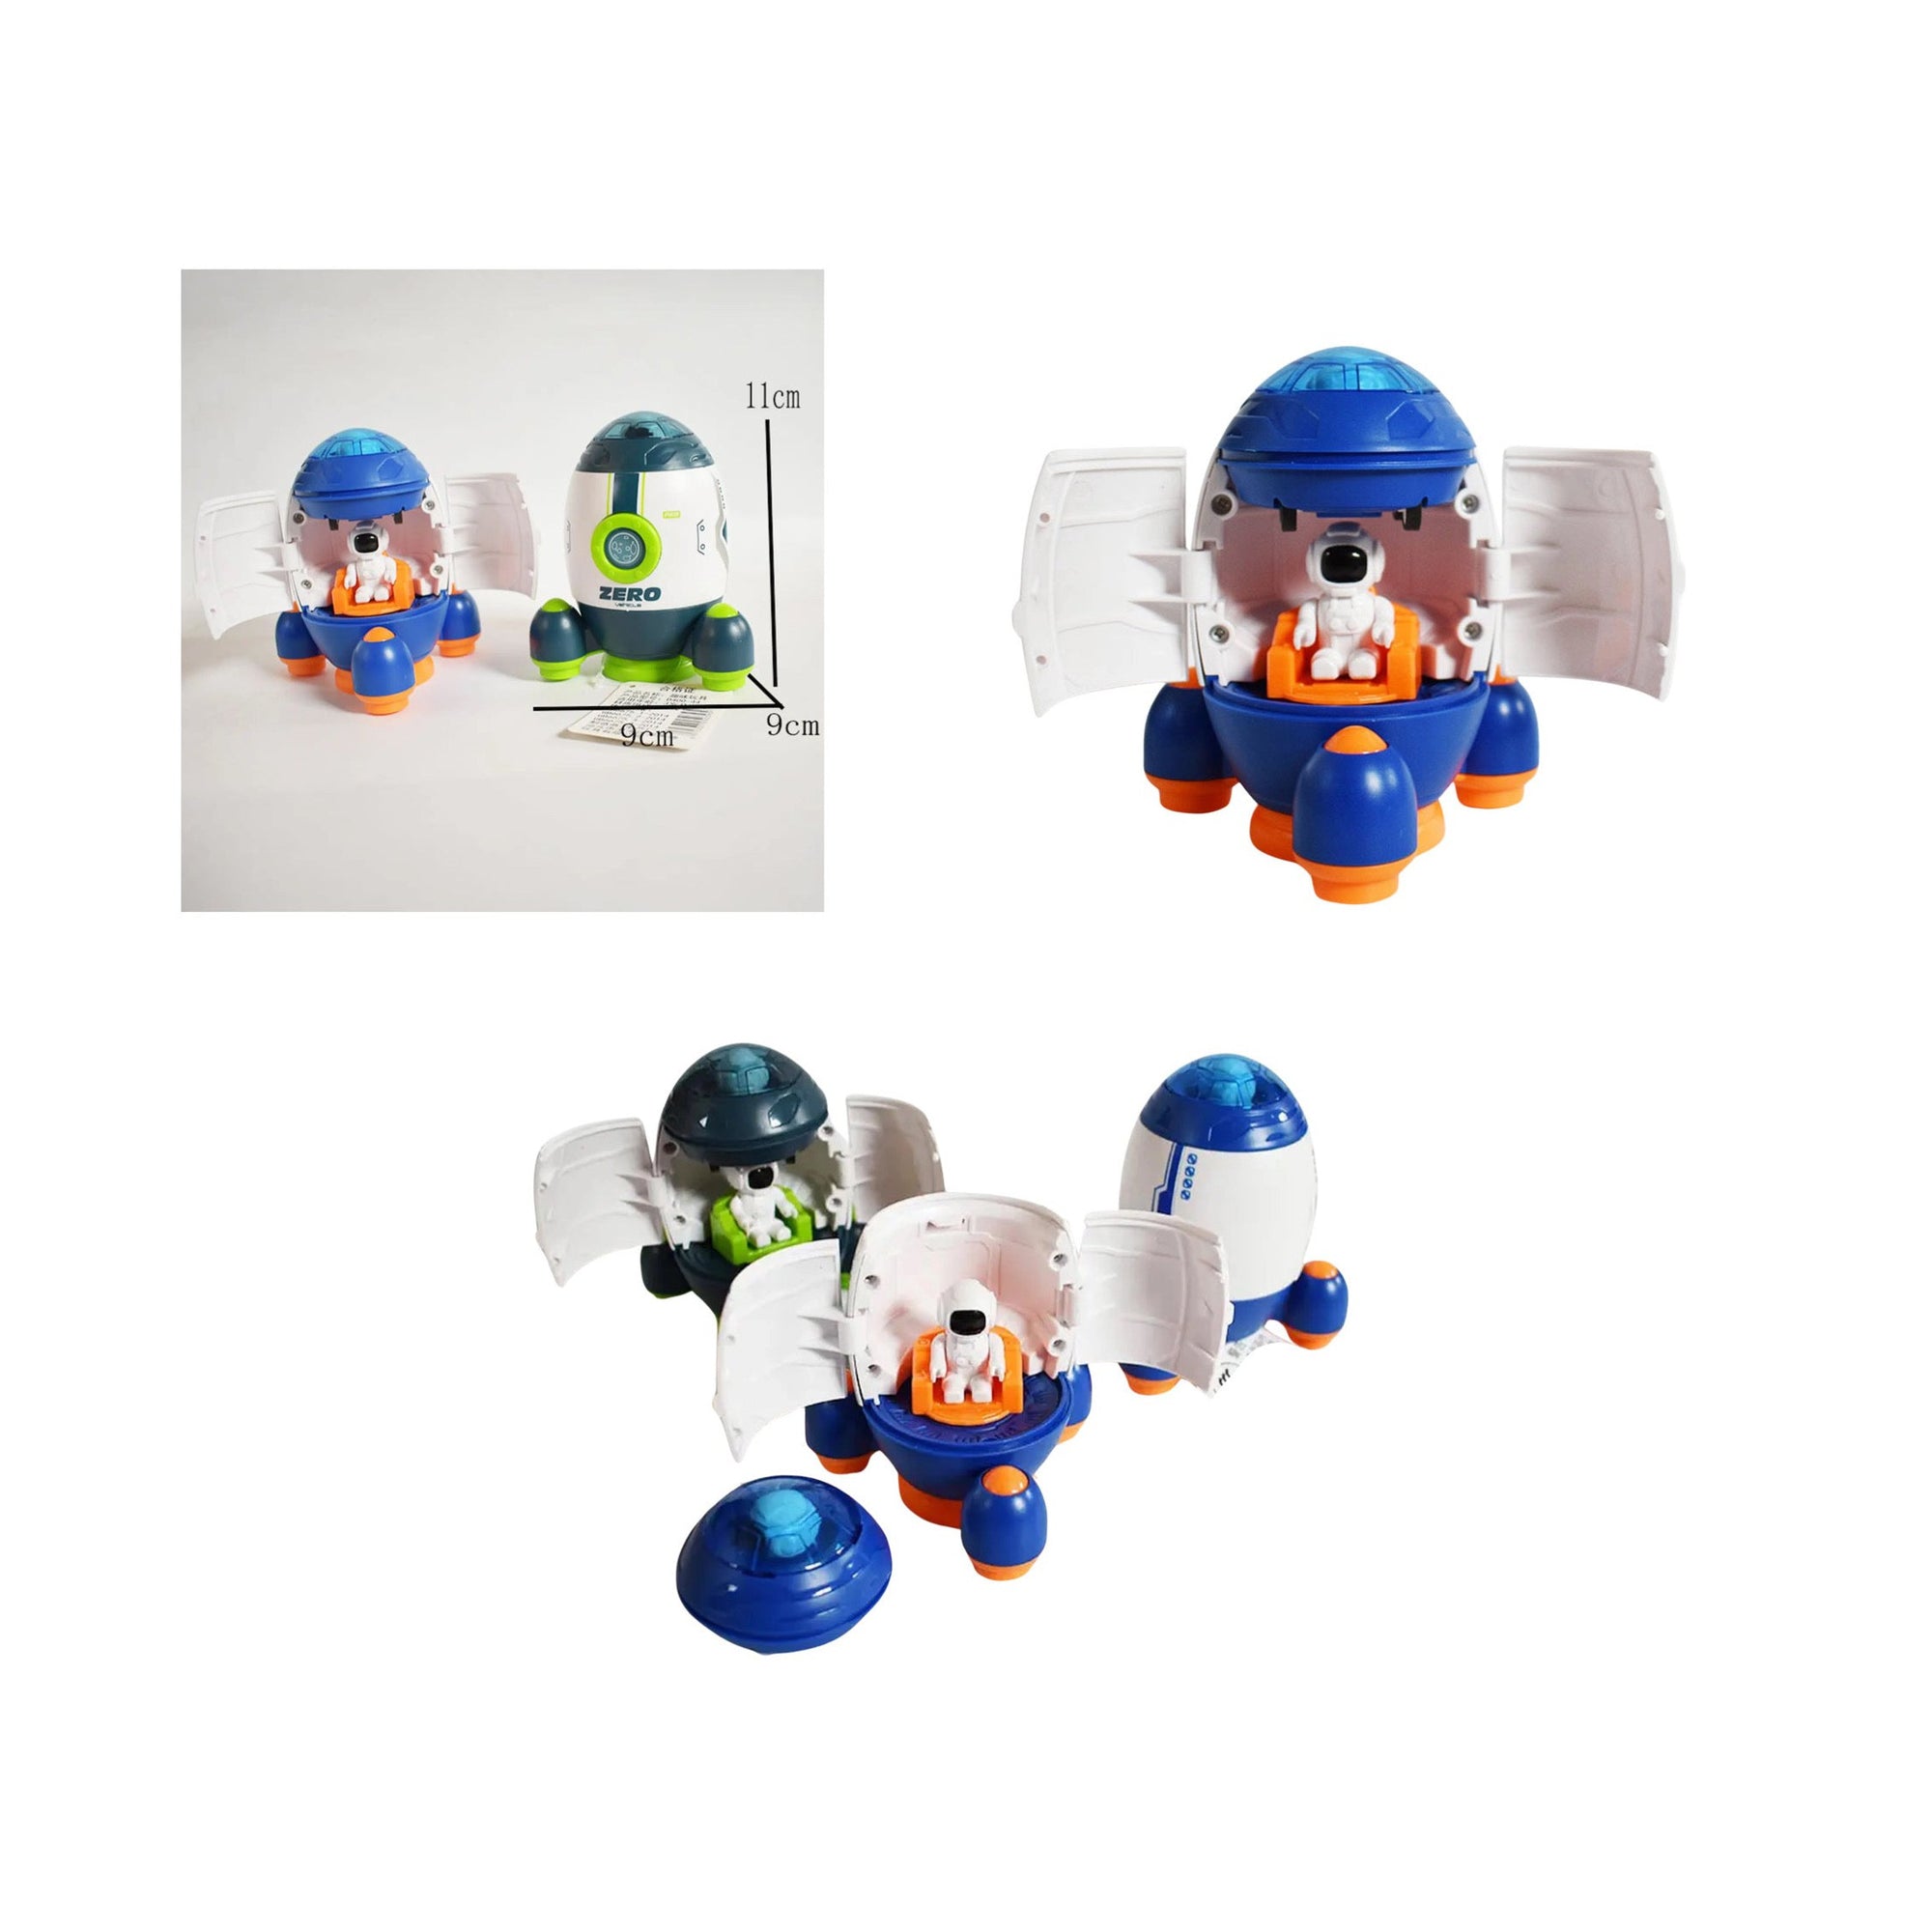 Spaceship Toy